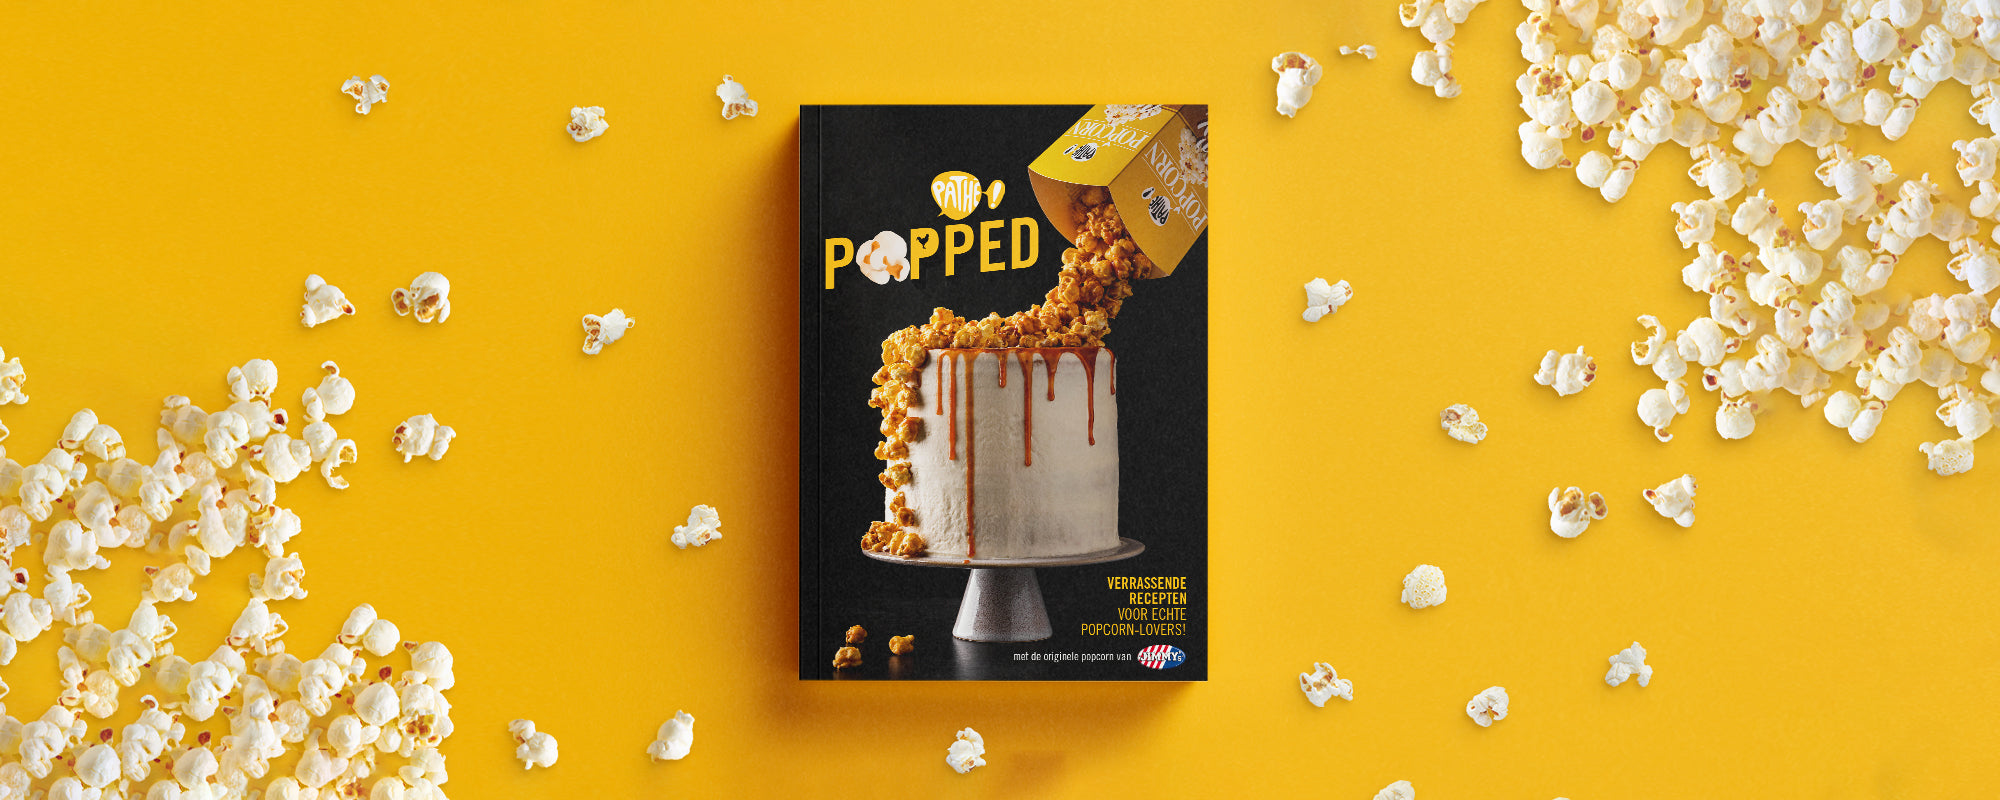 Hey, it's Popcorn Day - check deze recepten dan!